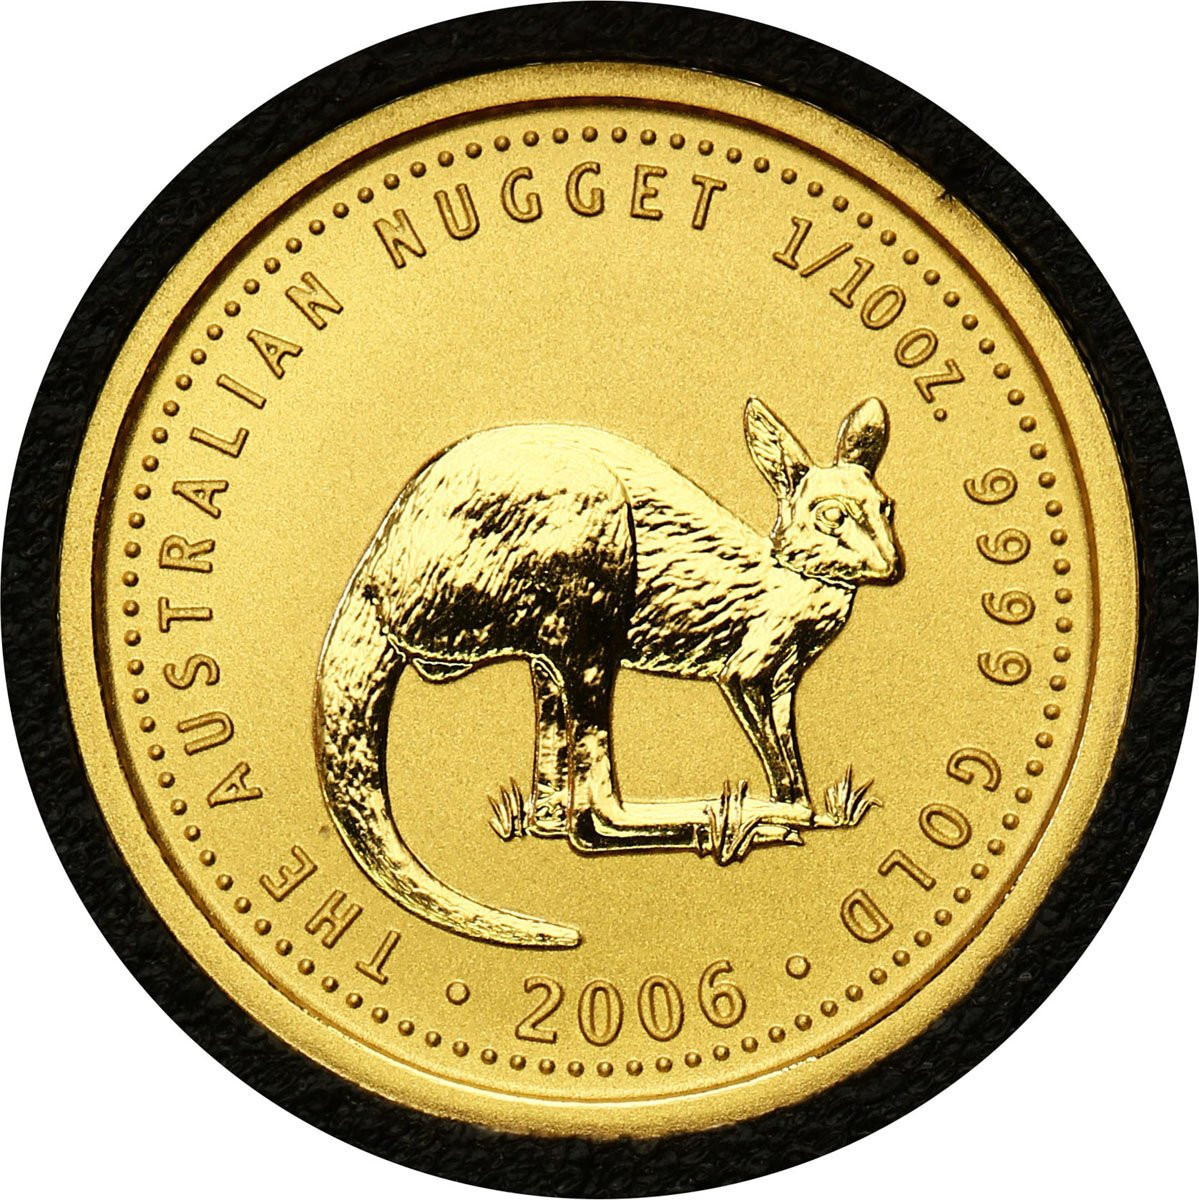 Australia. 15 $ dolarów 2006 Kangur - 1/10 uncji złota